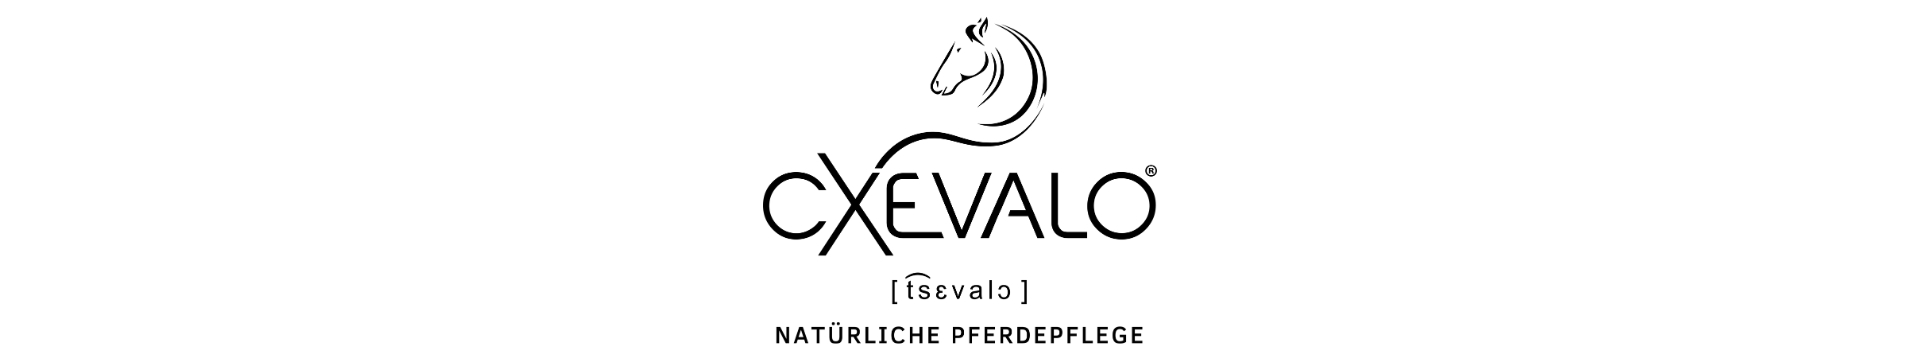 Cxevalo Logo - die natürliche Pferdepflege